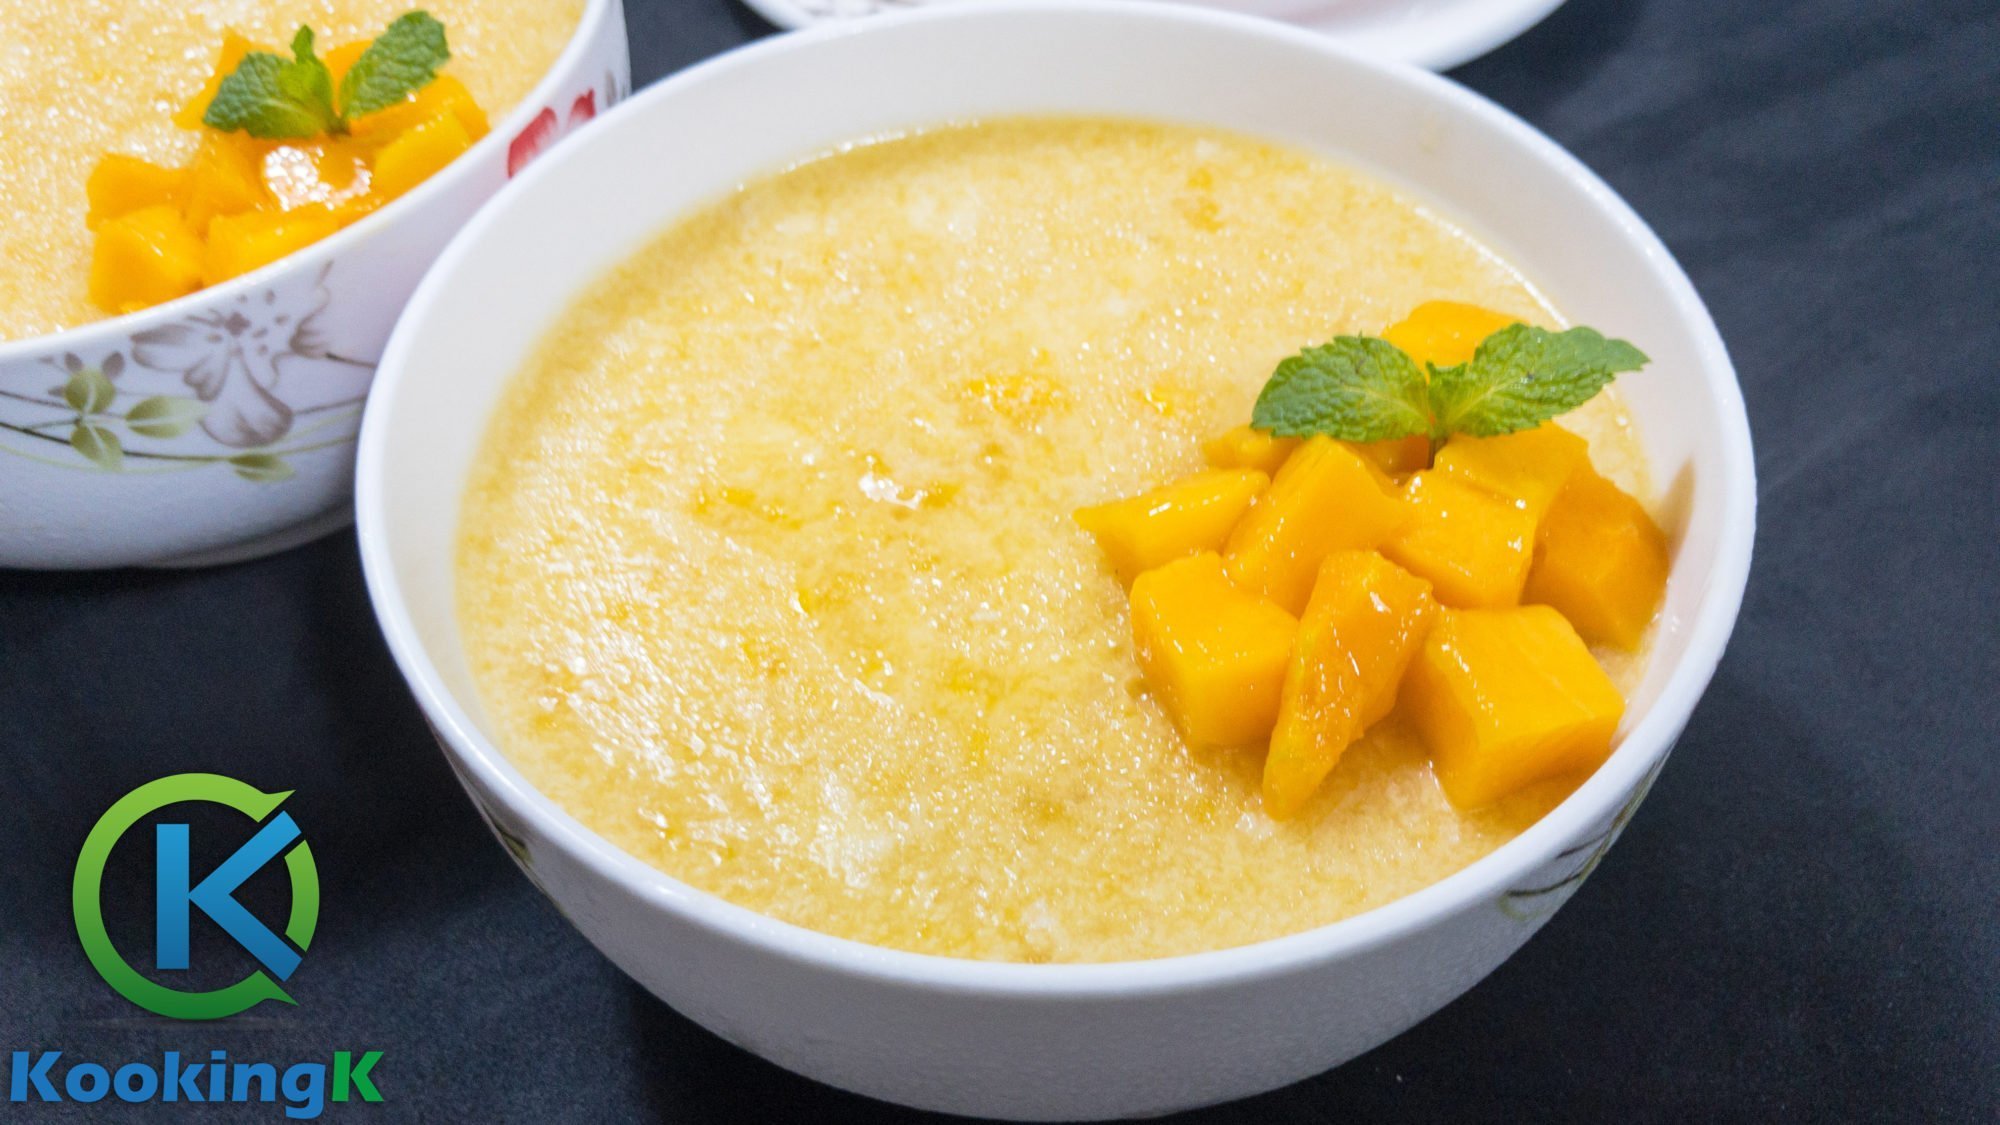 Mango Pudding with China Grass Recipe by KooKingK